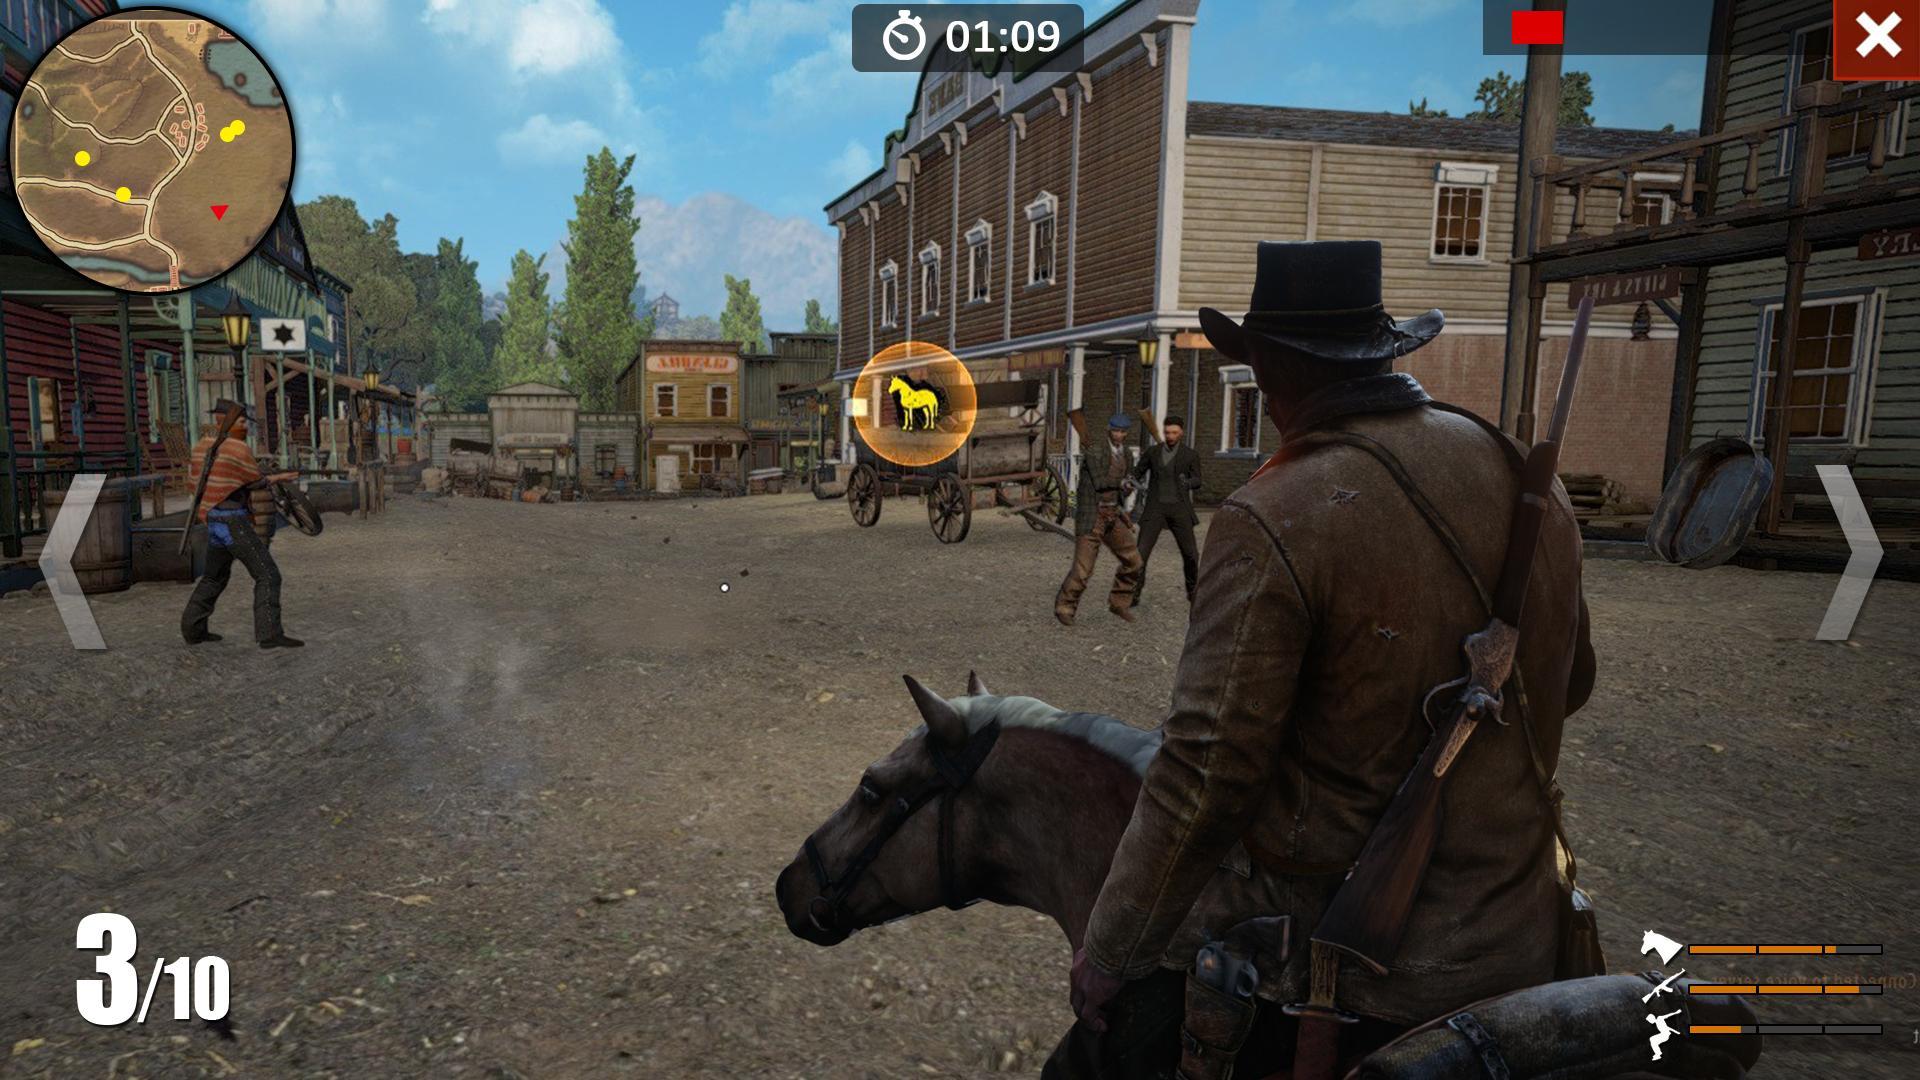 Guerra de vaqueros for Android - APK Download